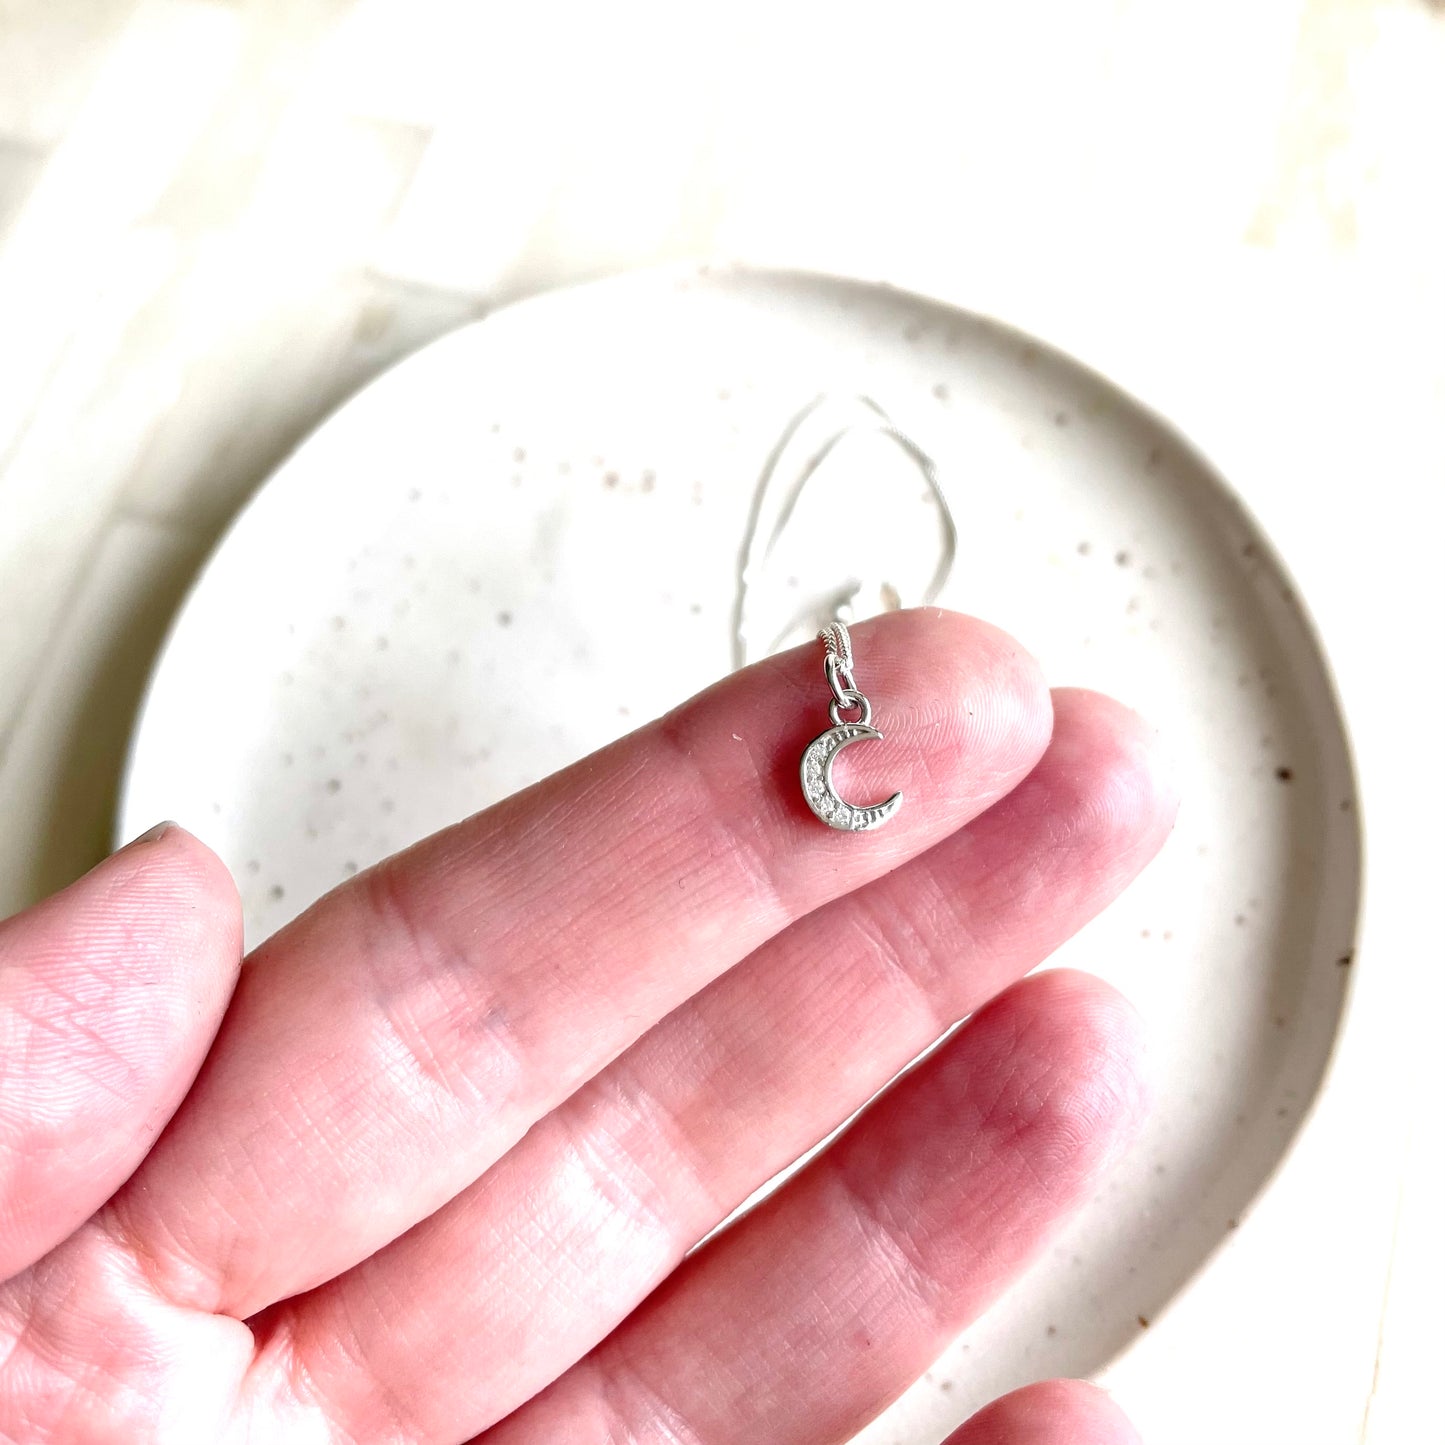 Tiny Moon Necklace